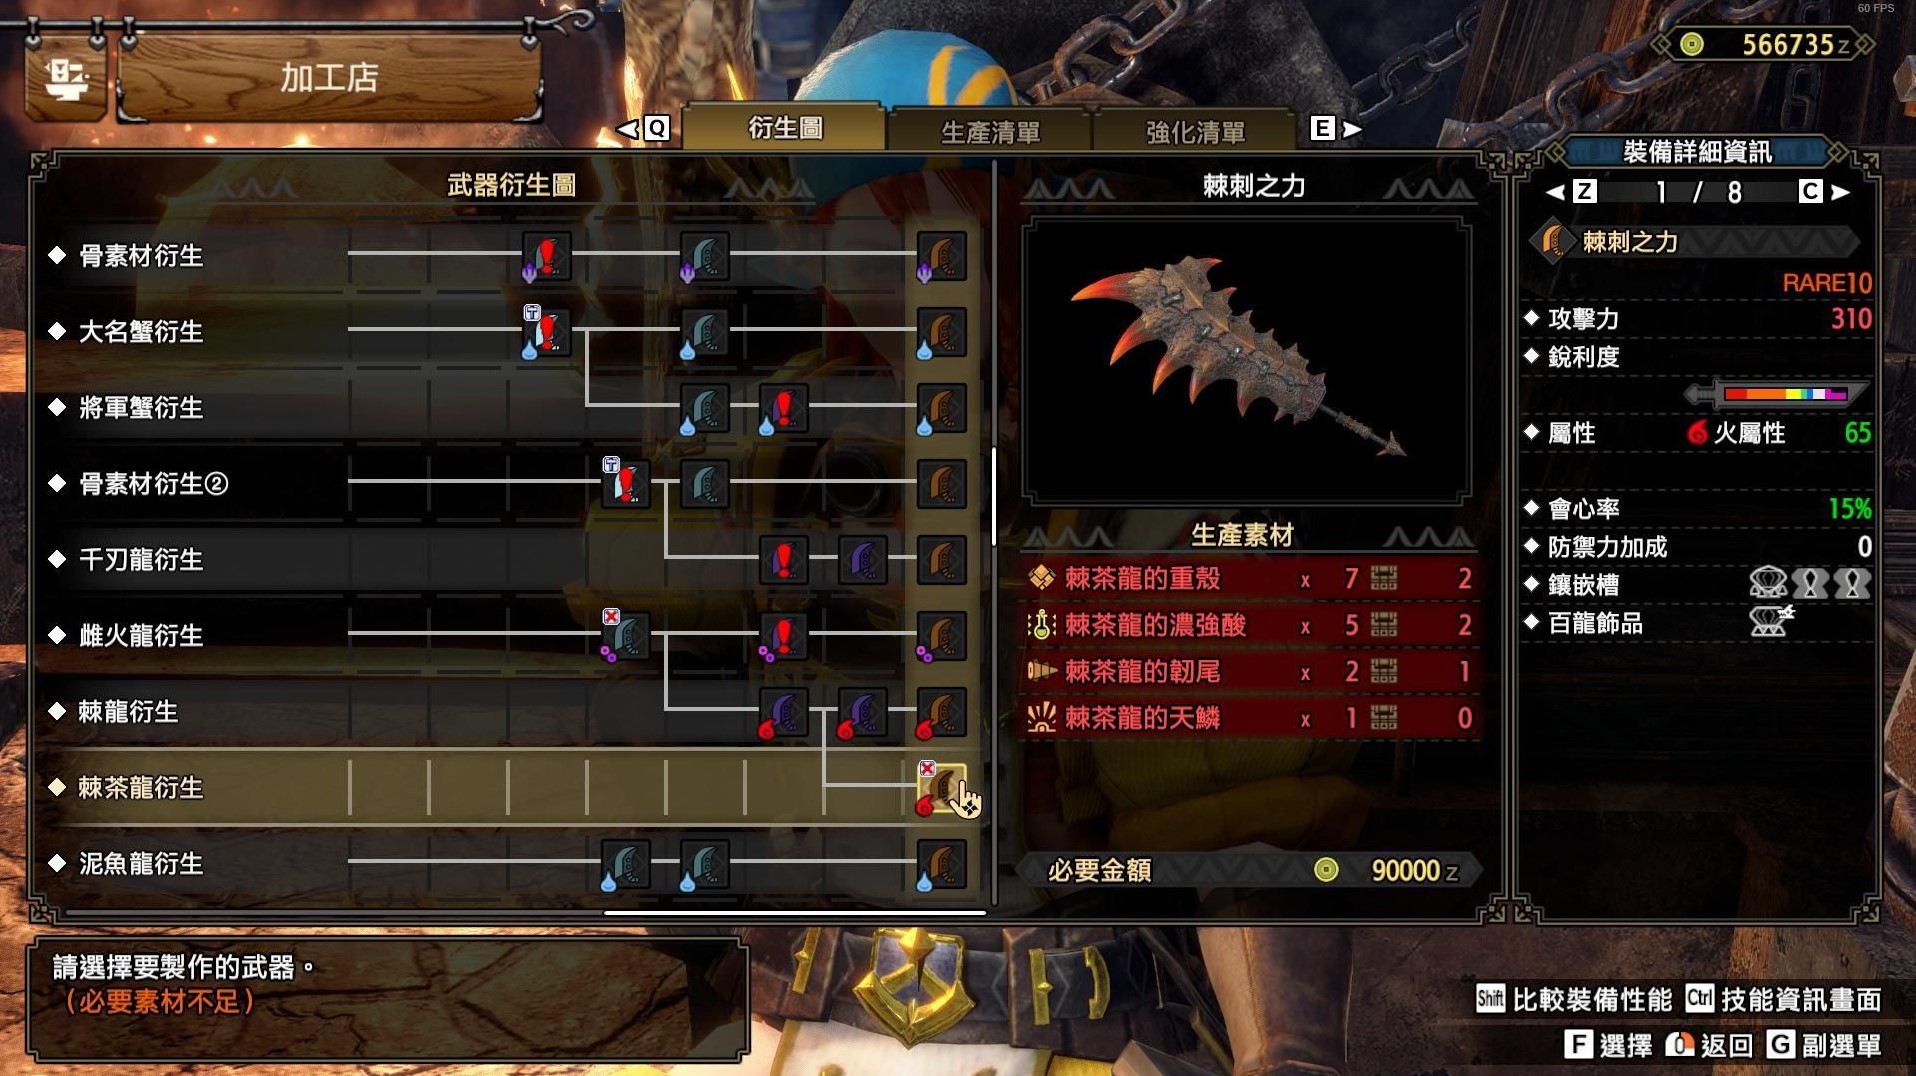 《怪物猎人崛起》曙光DLC第二弹配信新增武器图鉴 新增武器数据一览 - 第2张